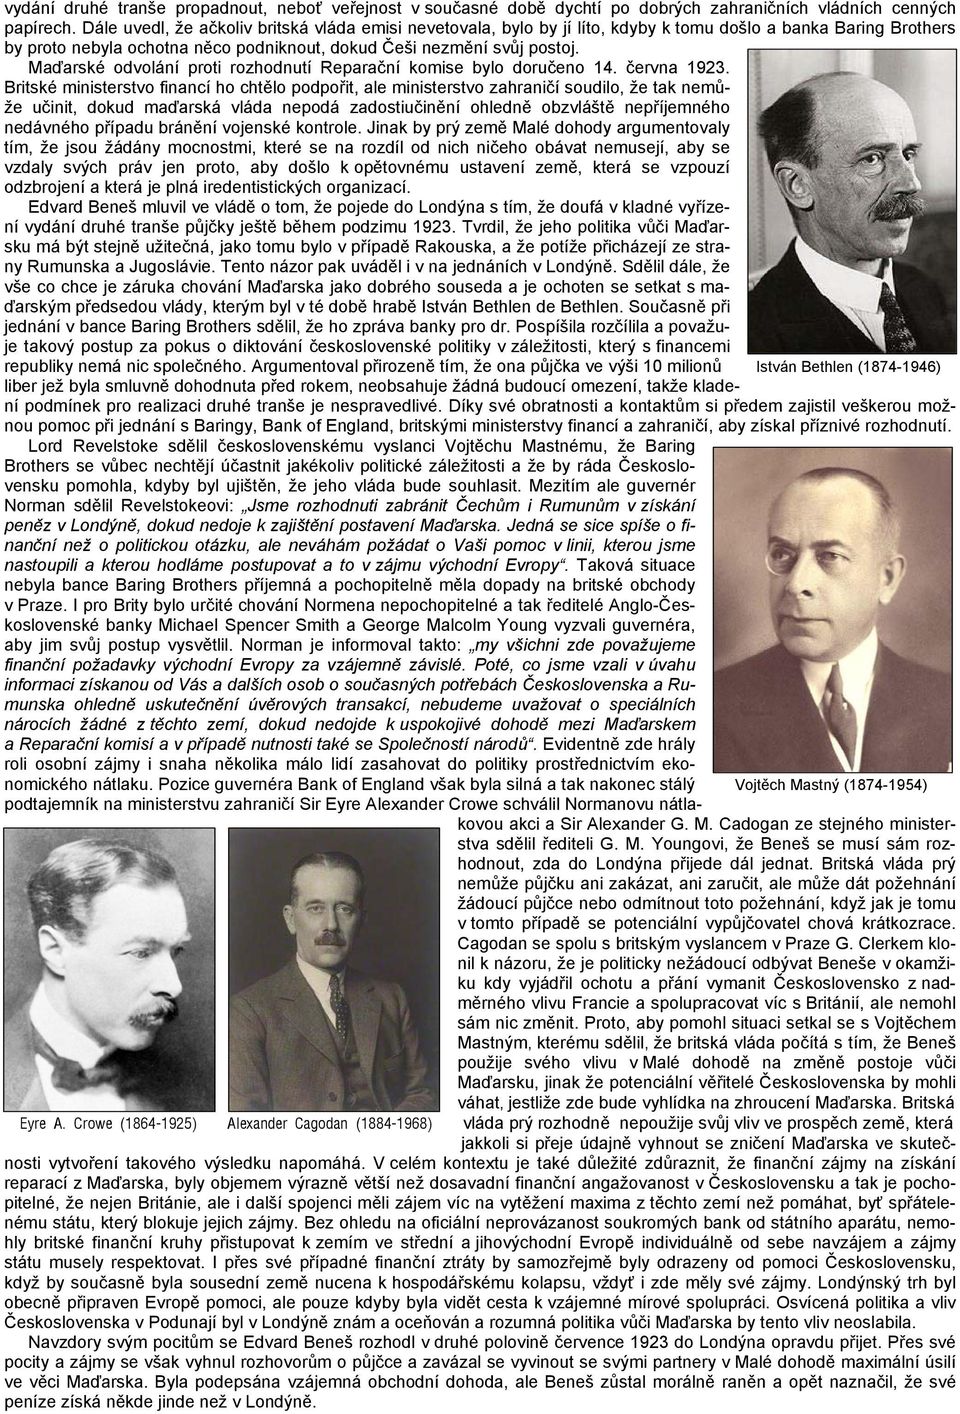 Maďarské odvolání proti rozhodnutí Reparační komise bylo doručeno 14. června 1923.